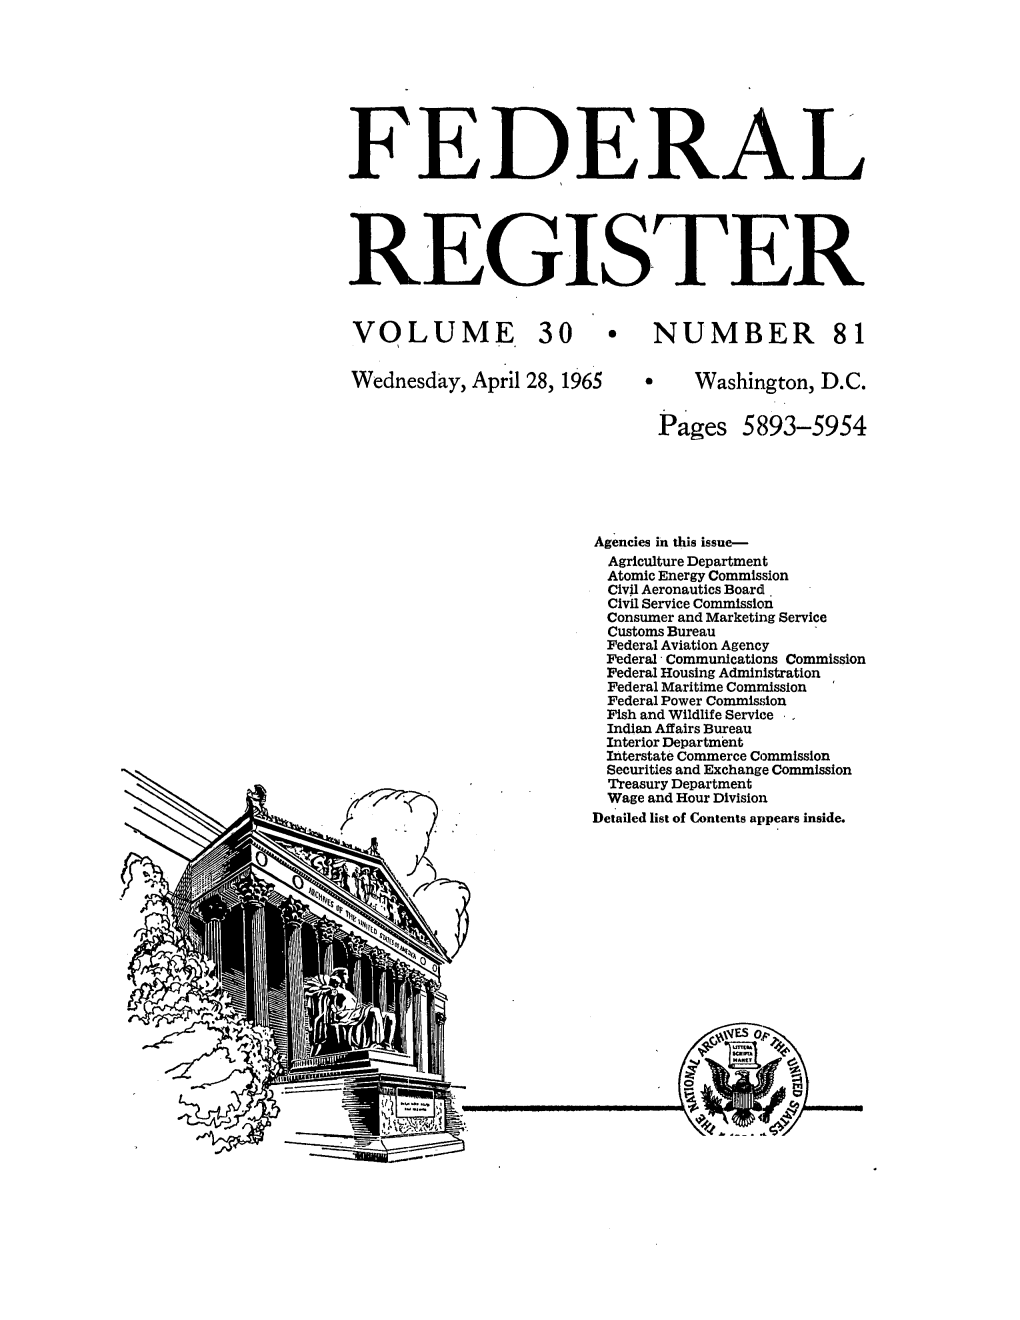 Federal Register: 30 Fed. Reg. 5893 (Apr. 28, 1965)